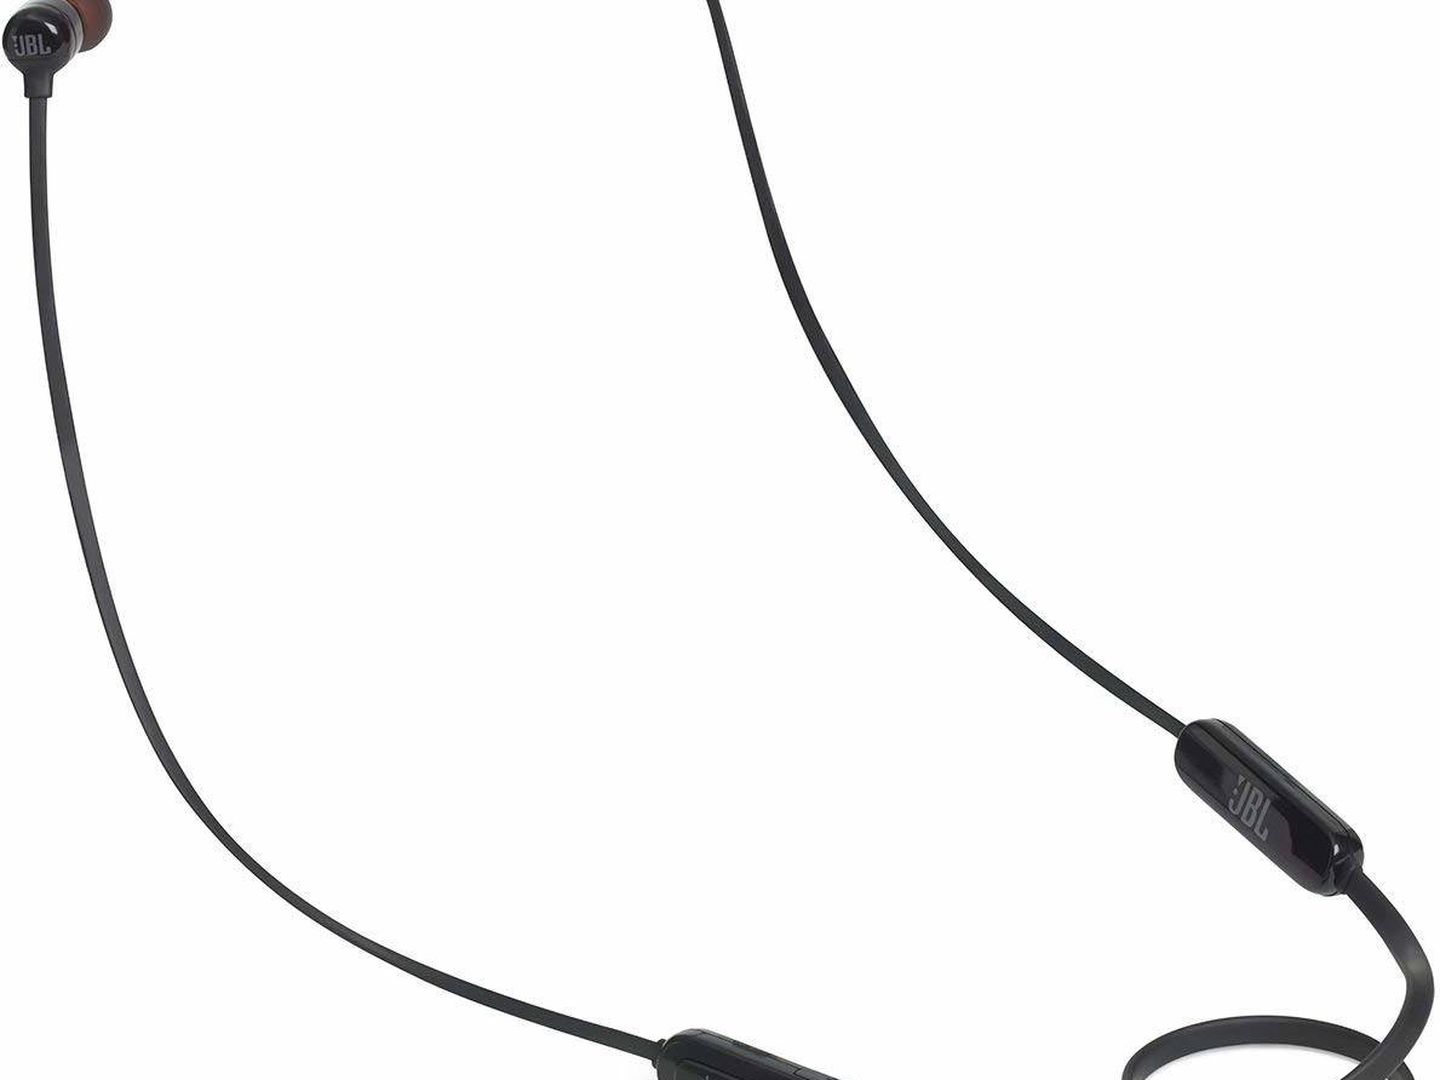 Con seis horas de batería y la tecnología de sonido Pure Bass, estos auriculares inalámbricos de JBL son una opción muy recomendable (Imagen: Amazon)